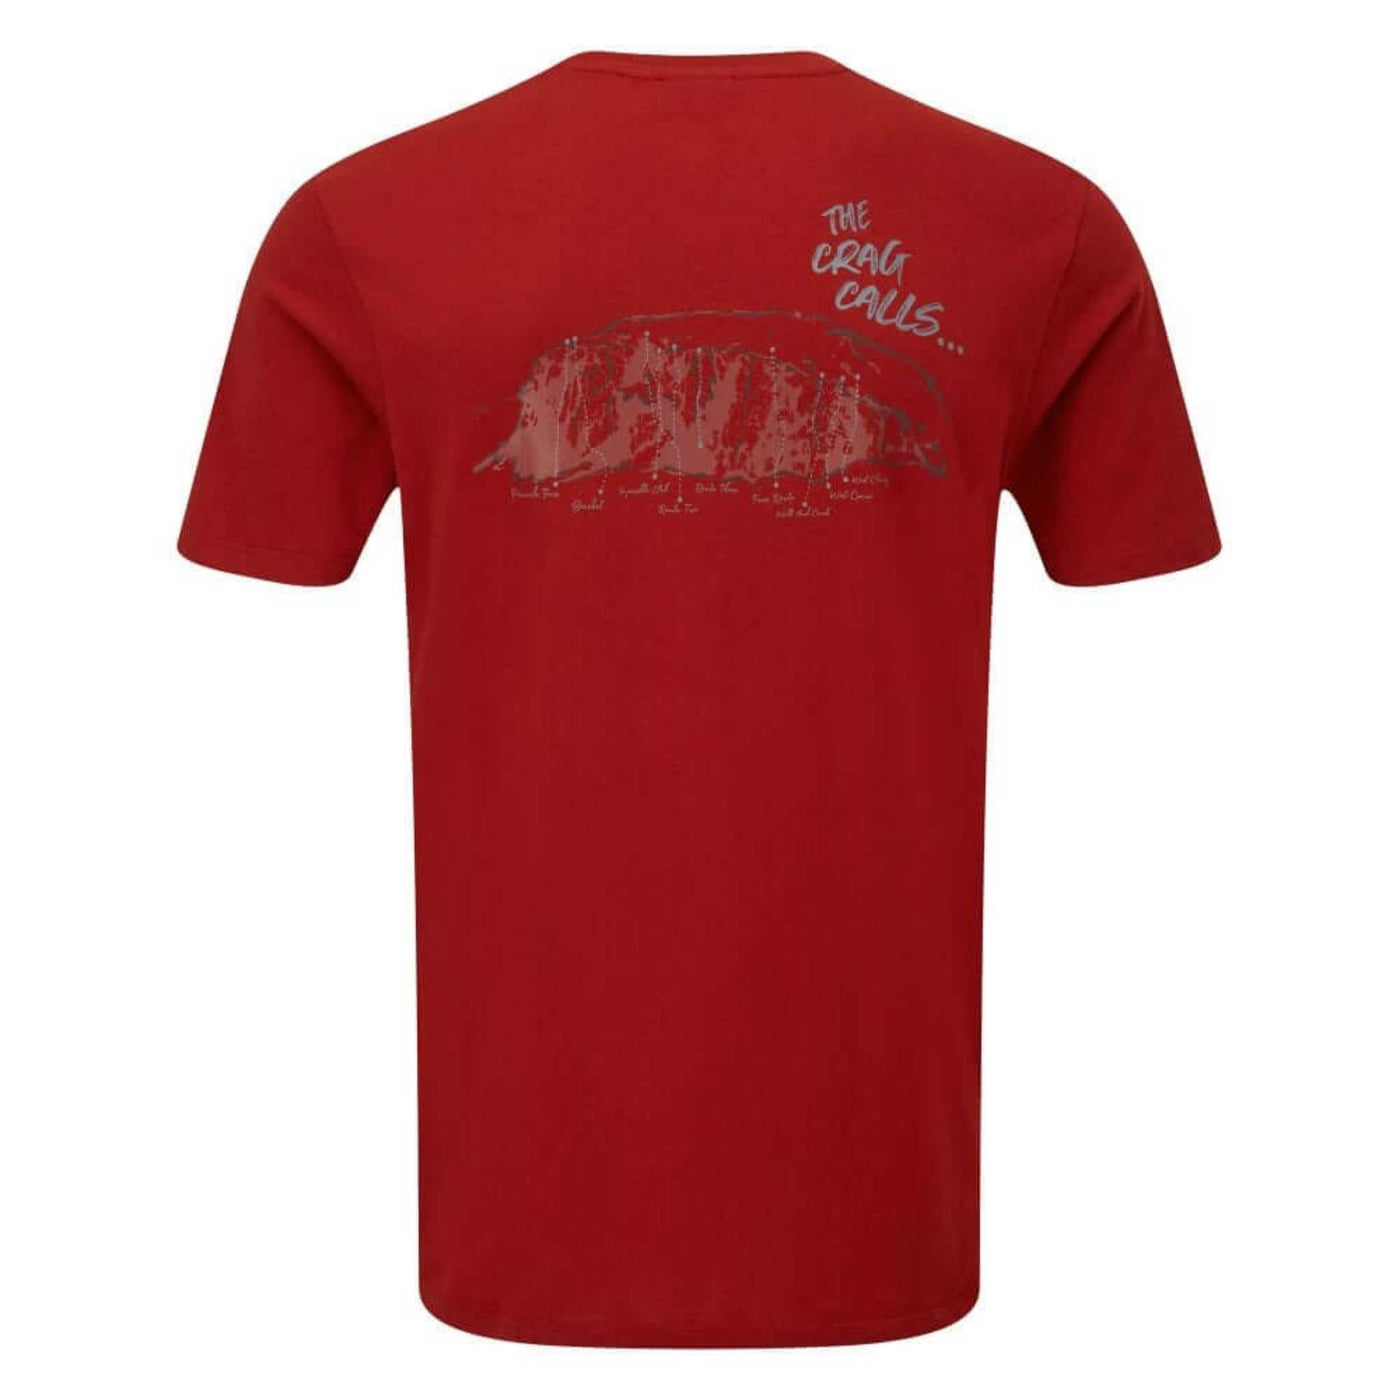 Montane Crag Calls T-Shirt | Organic Cotton T-Shirt NZ | Montane NZ | Further Faster Christchurch NZ #redwood